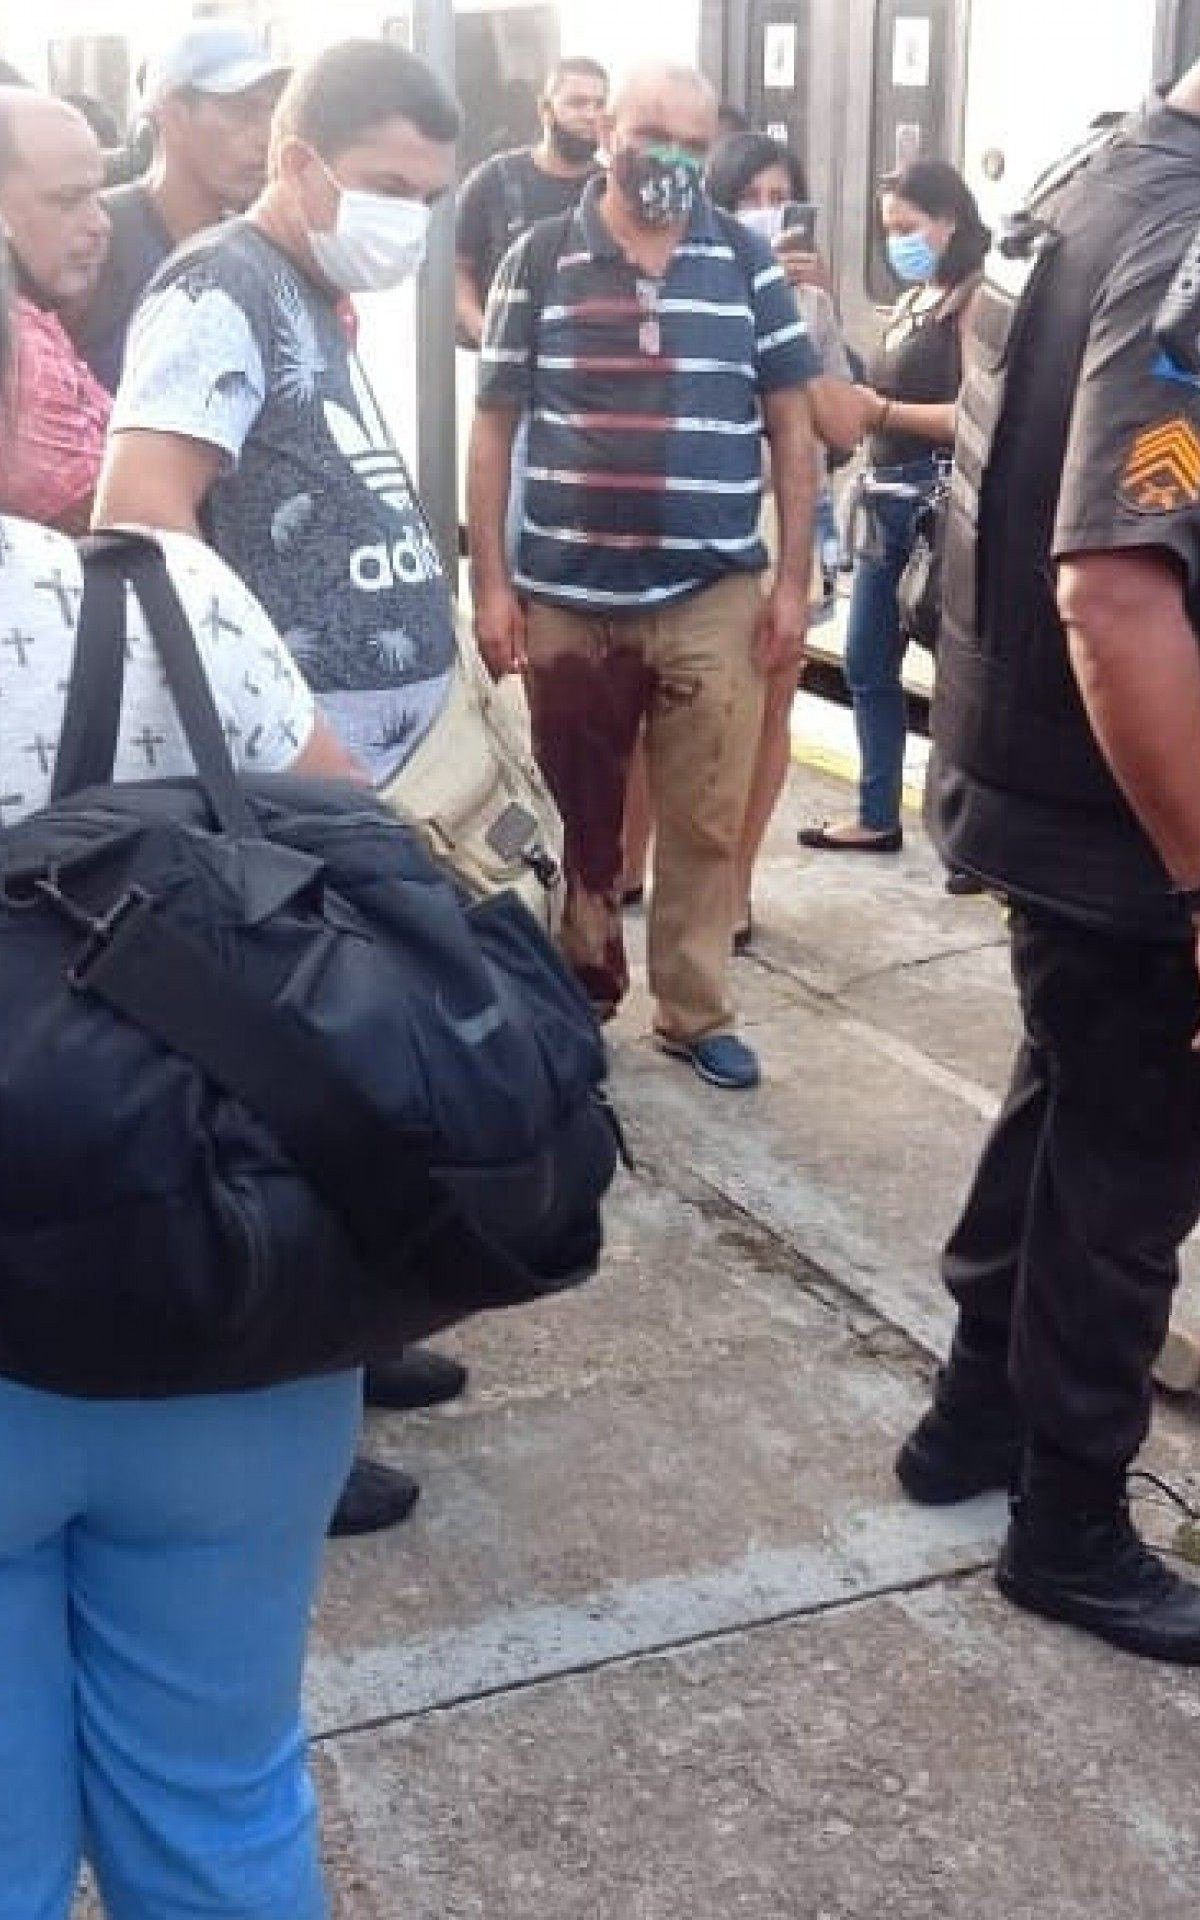 Morre mulher baleada durante assalto em trem da Supervia | Rio de Janeiro |  O DIA